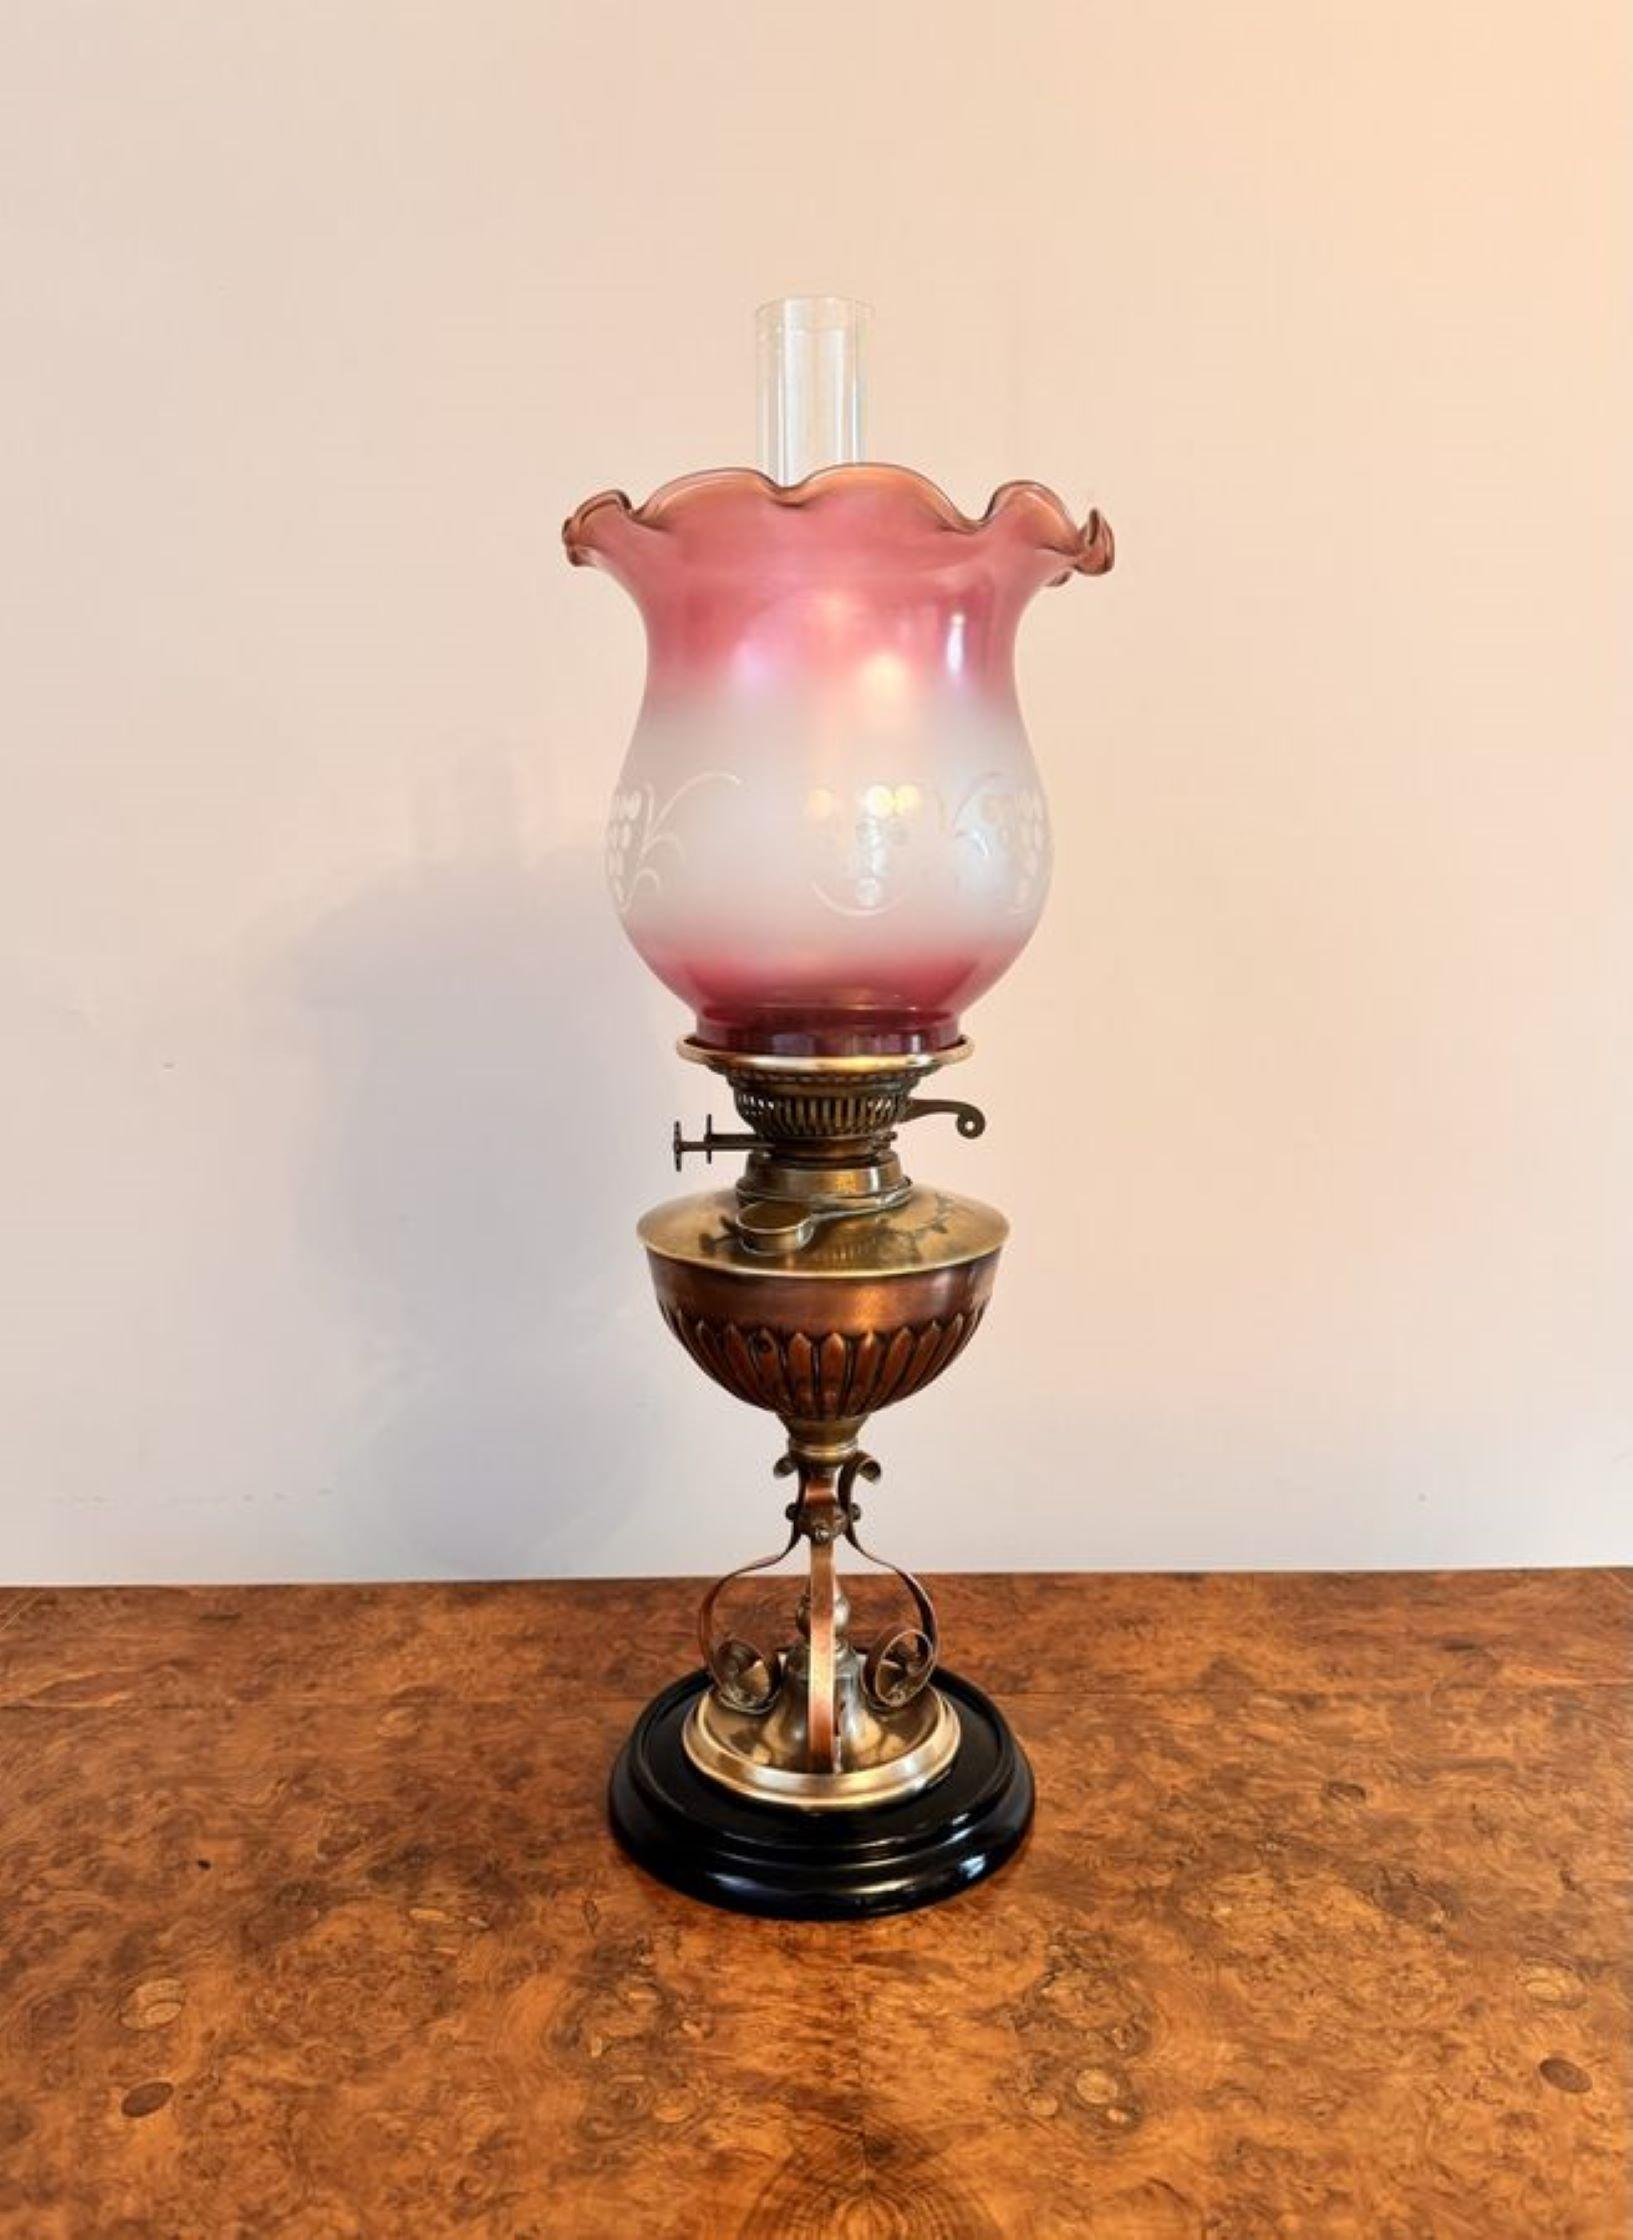 Superbe lampe à huile en cuivre et laiton, de qualité artisanale, avec un abat-jour en verre rose d'origine au bord ondulé, une cheminée en verre, un brûleur en laiton, soutenu par une colonne en cuivre et laiton, le tout reposant sur une base